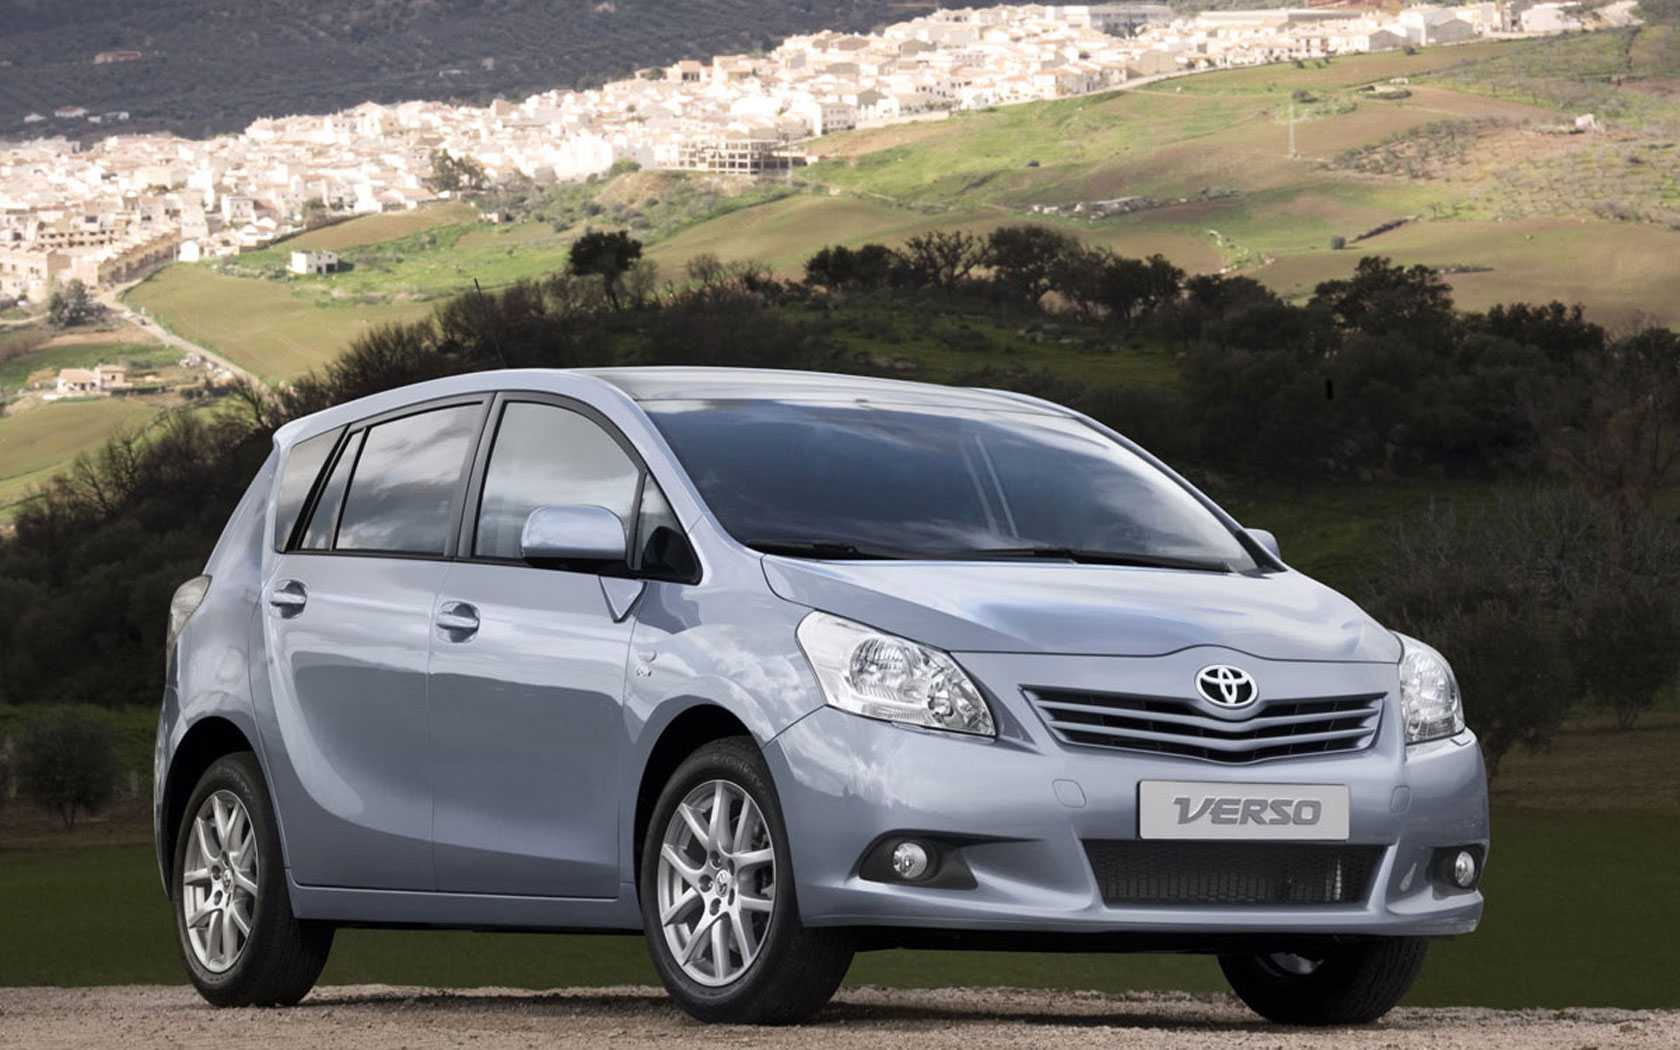 Toyota proace verso 2017: идеальный минивэн для бизнеса и путешествий